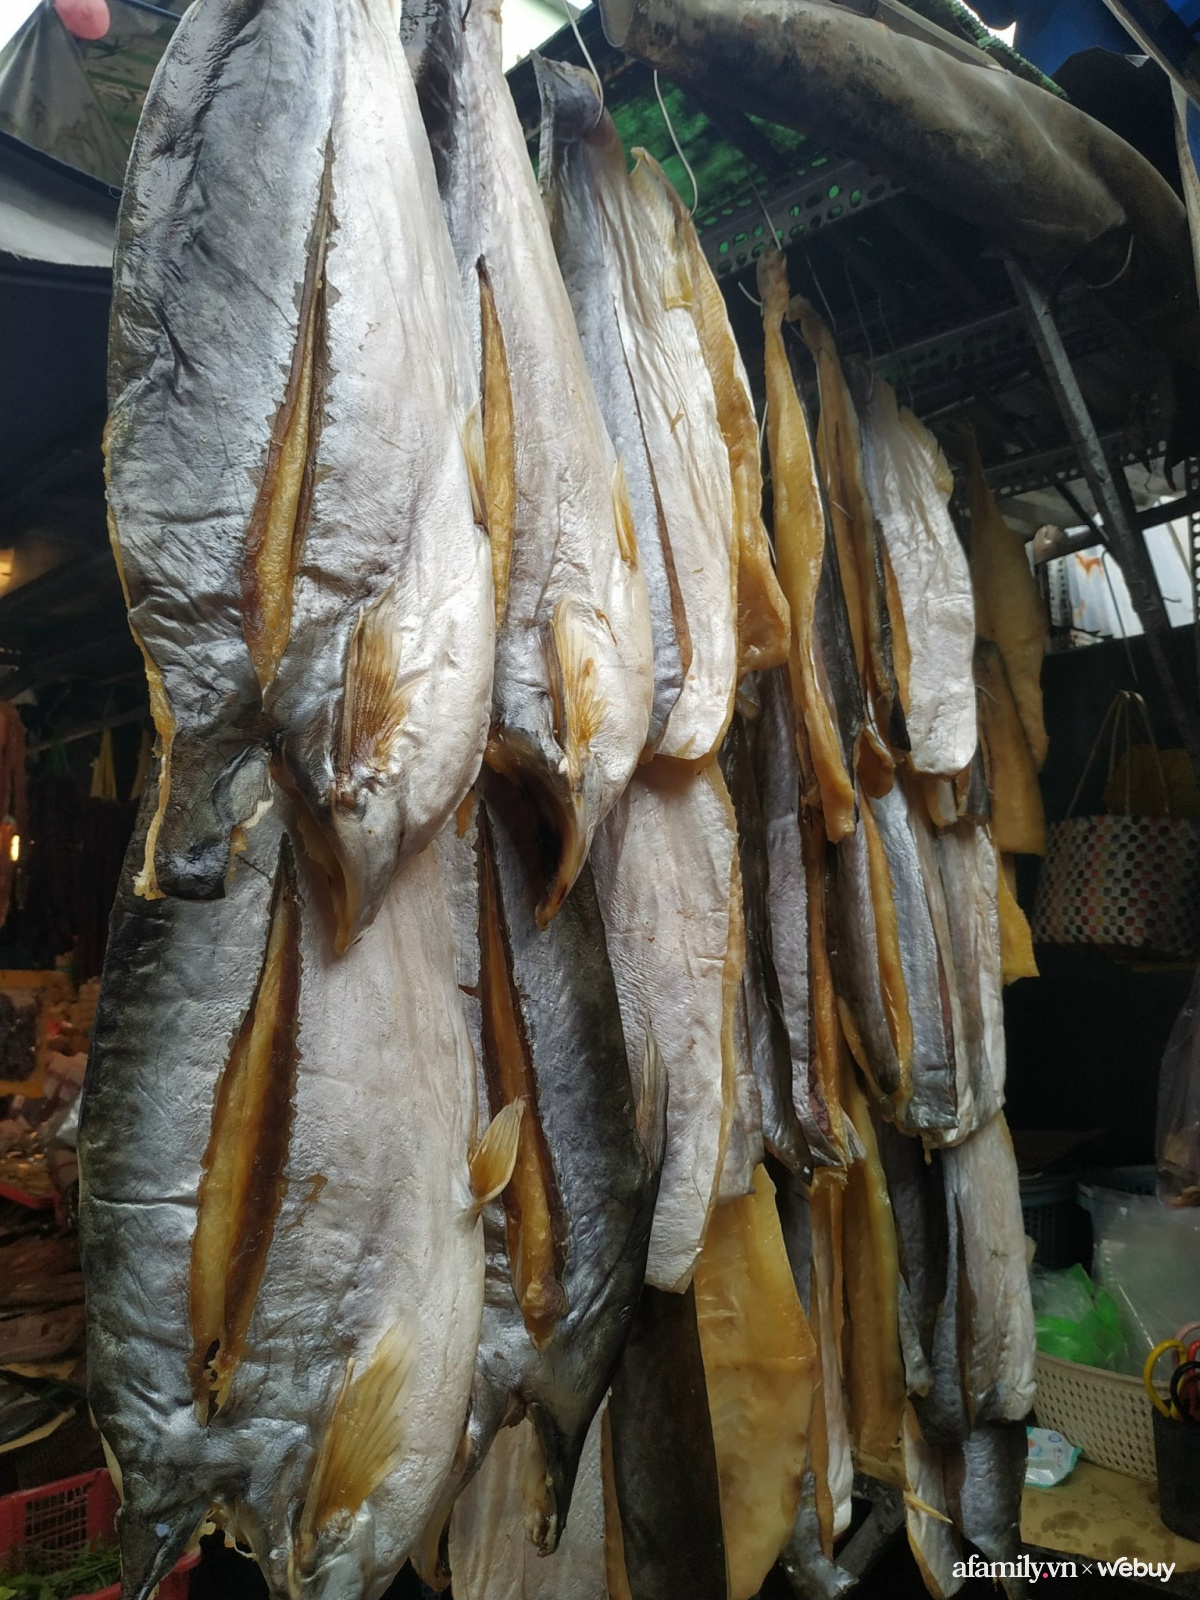 Ghé chợ Campuchia ở Sài Gòn “săn” món lạ ăn Tết: Cầm vài trăm nghìn mua được những gì? - Ảnh 4.